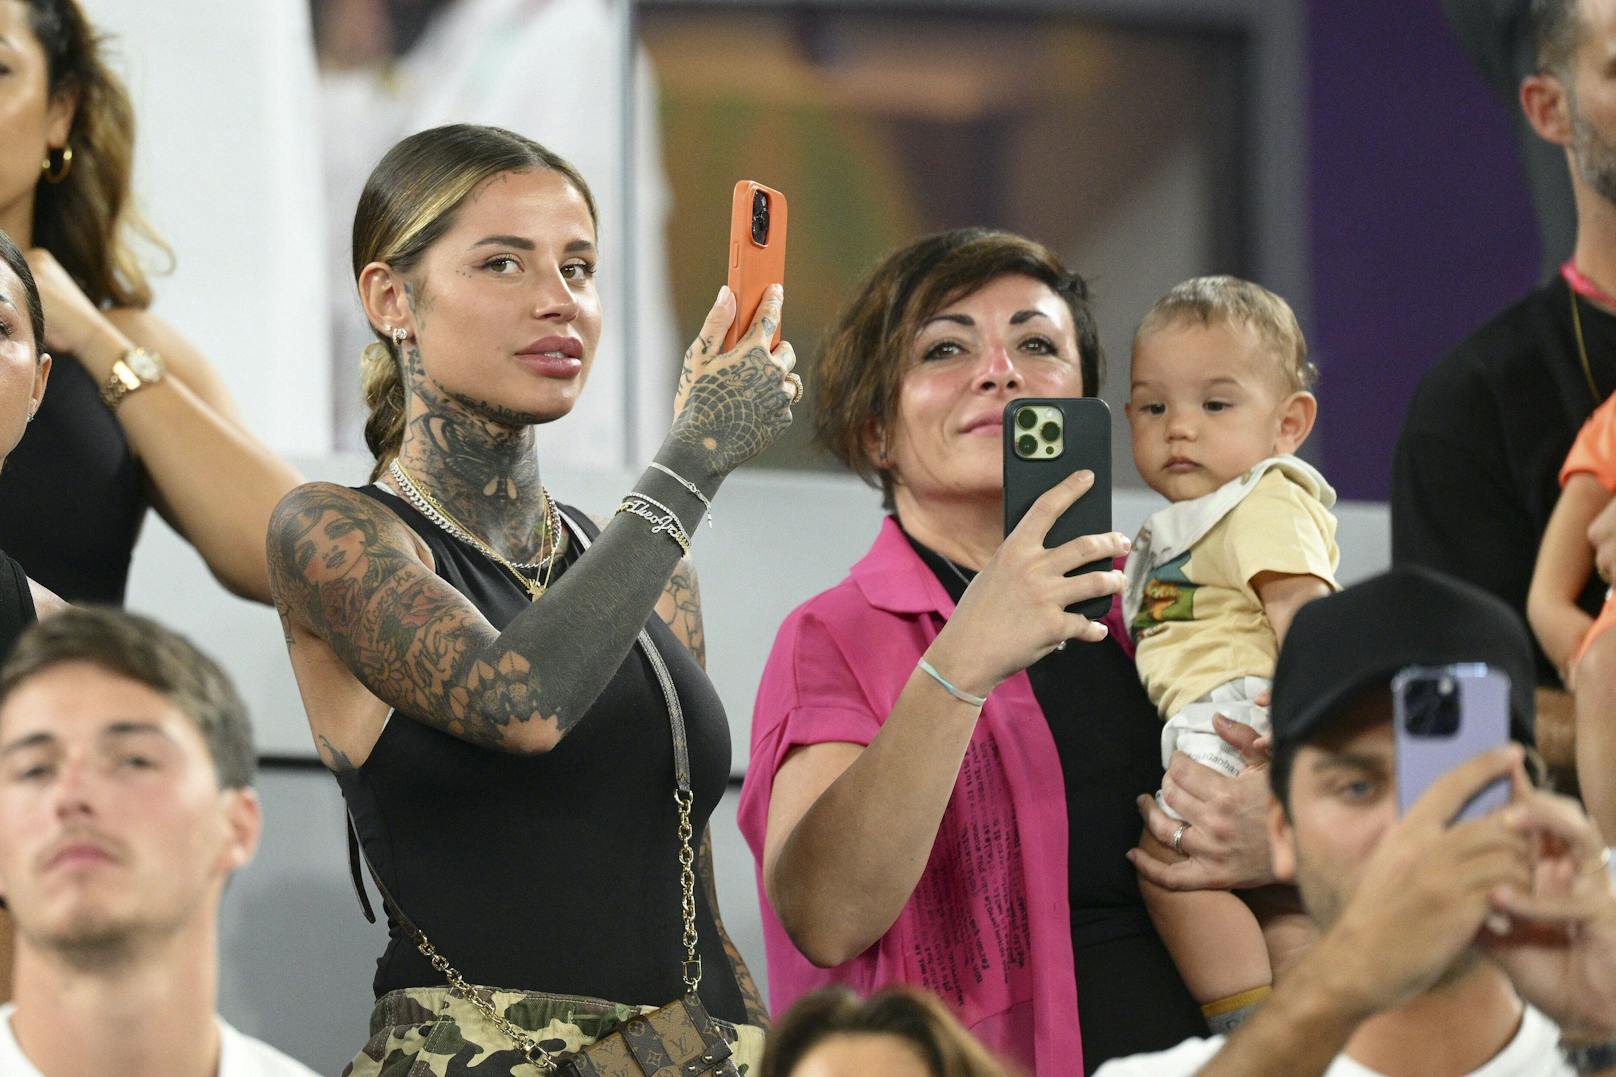 Zoe Cristofoli drückt ihrem Freund, Frankreich-Star Theo Hernandez bei der WM die Daumen.